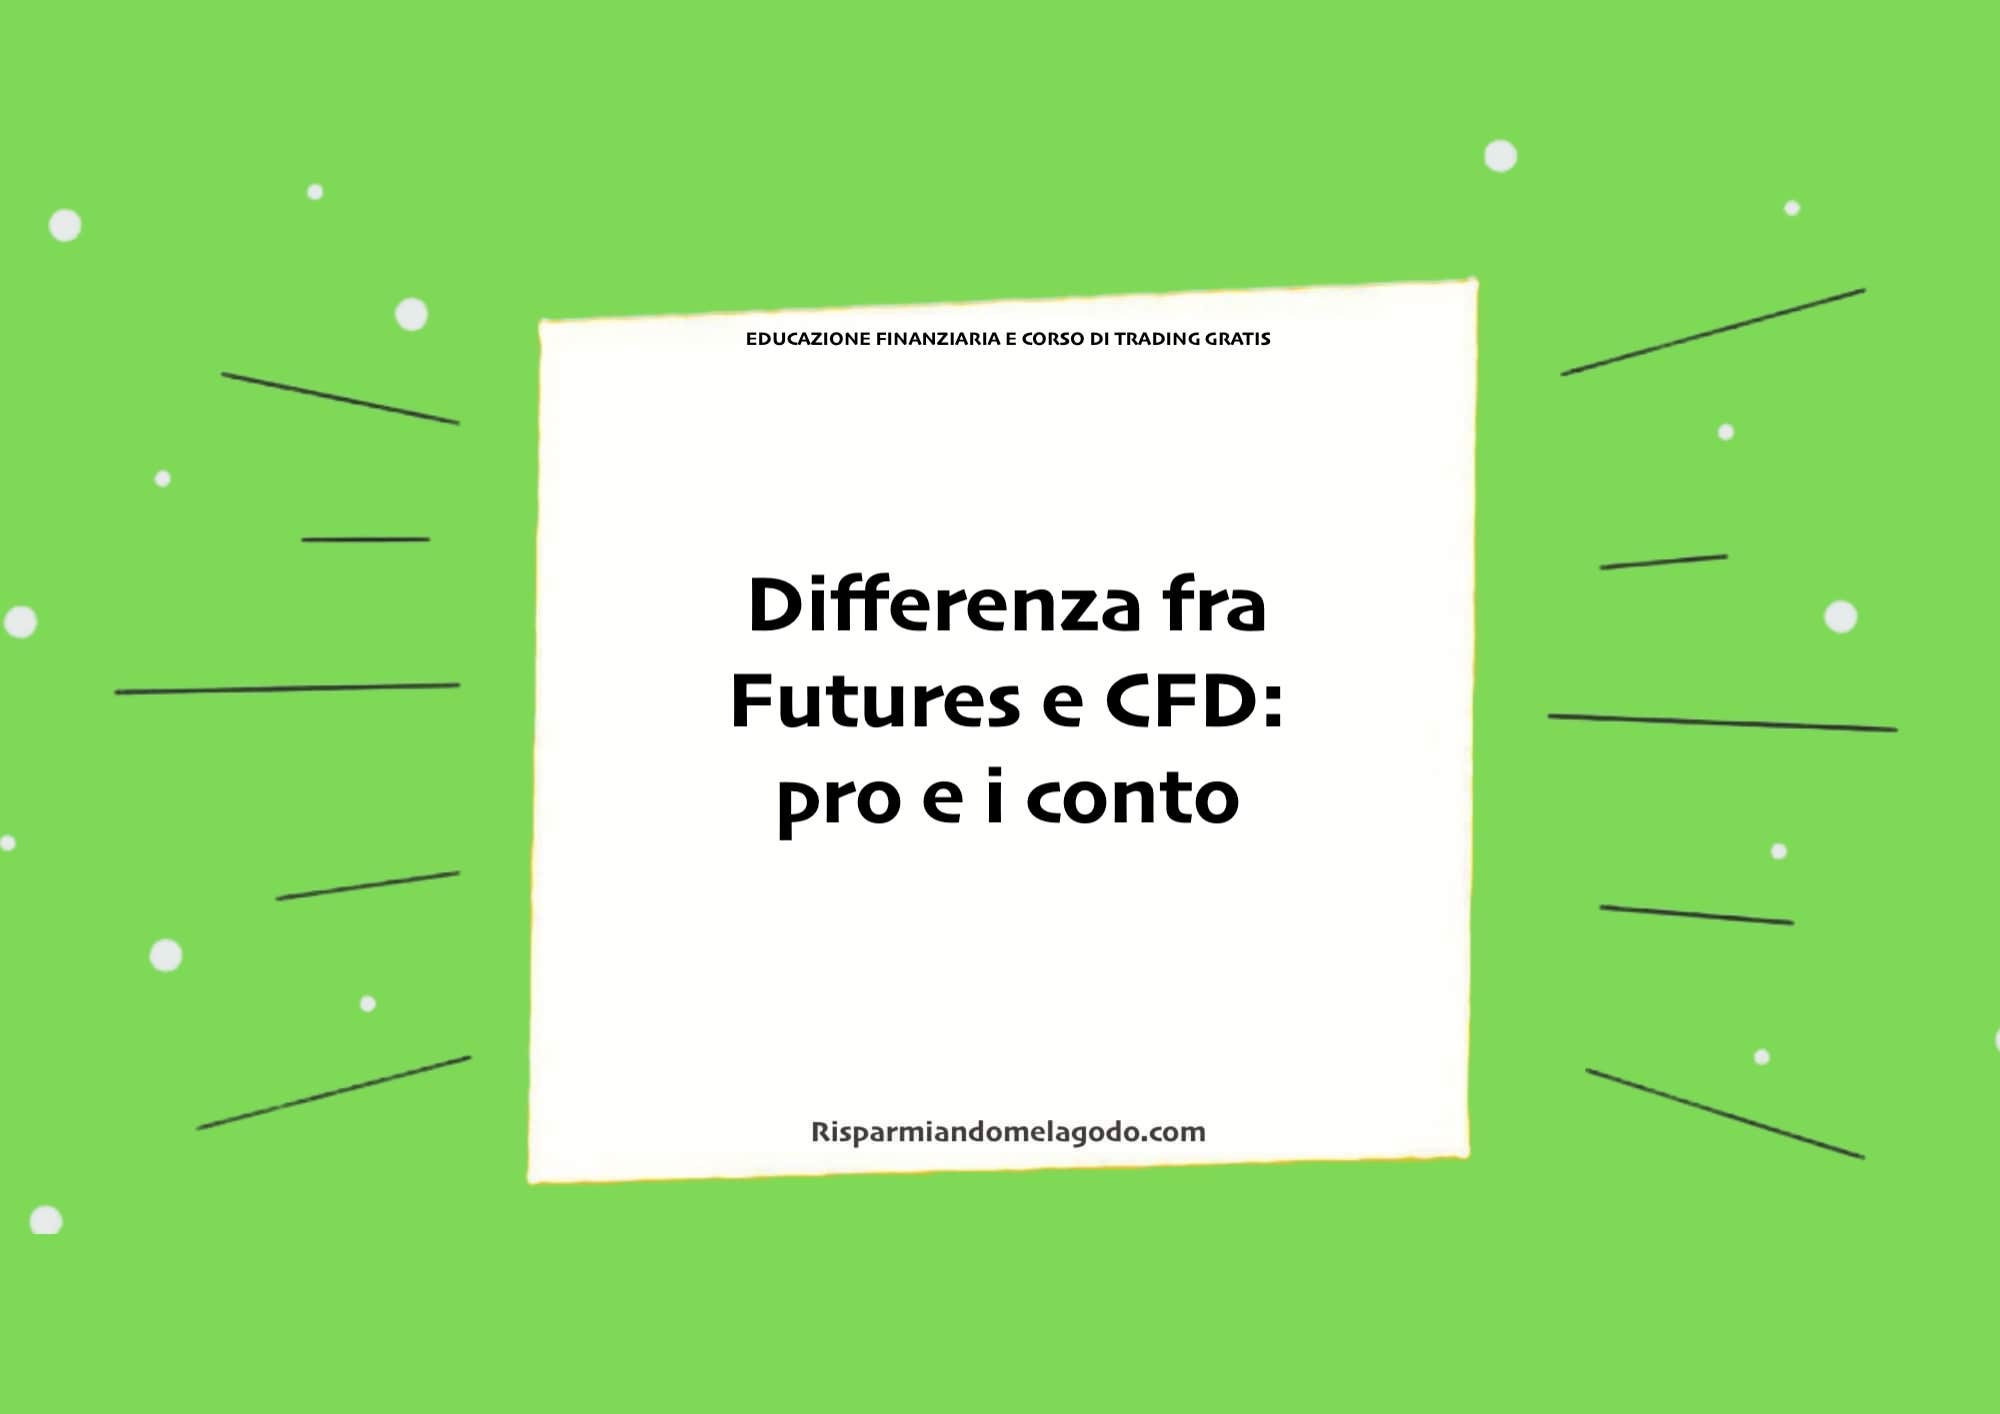 Differenza fra Futures e CFD: pro e i conto